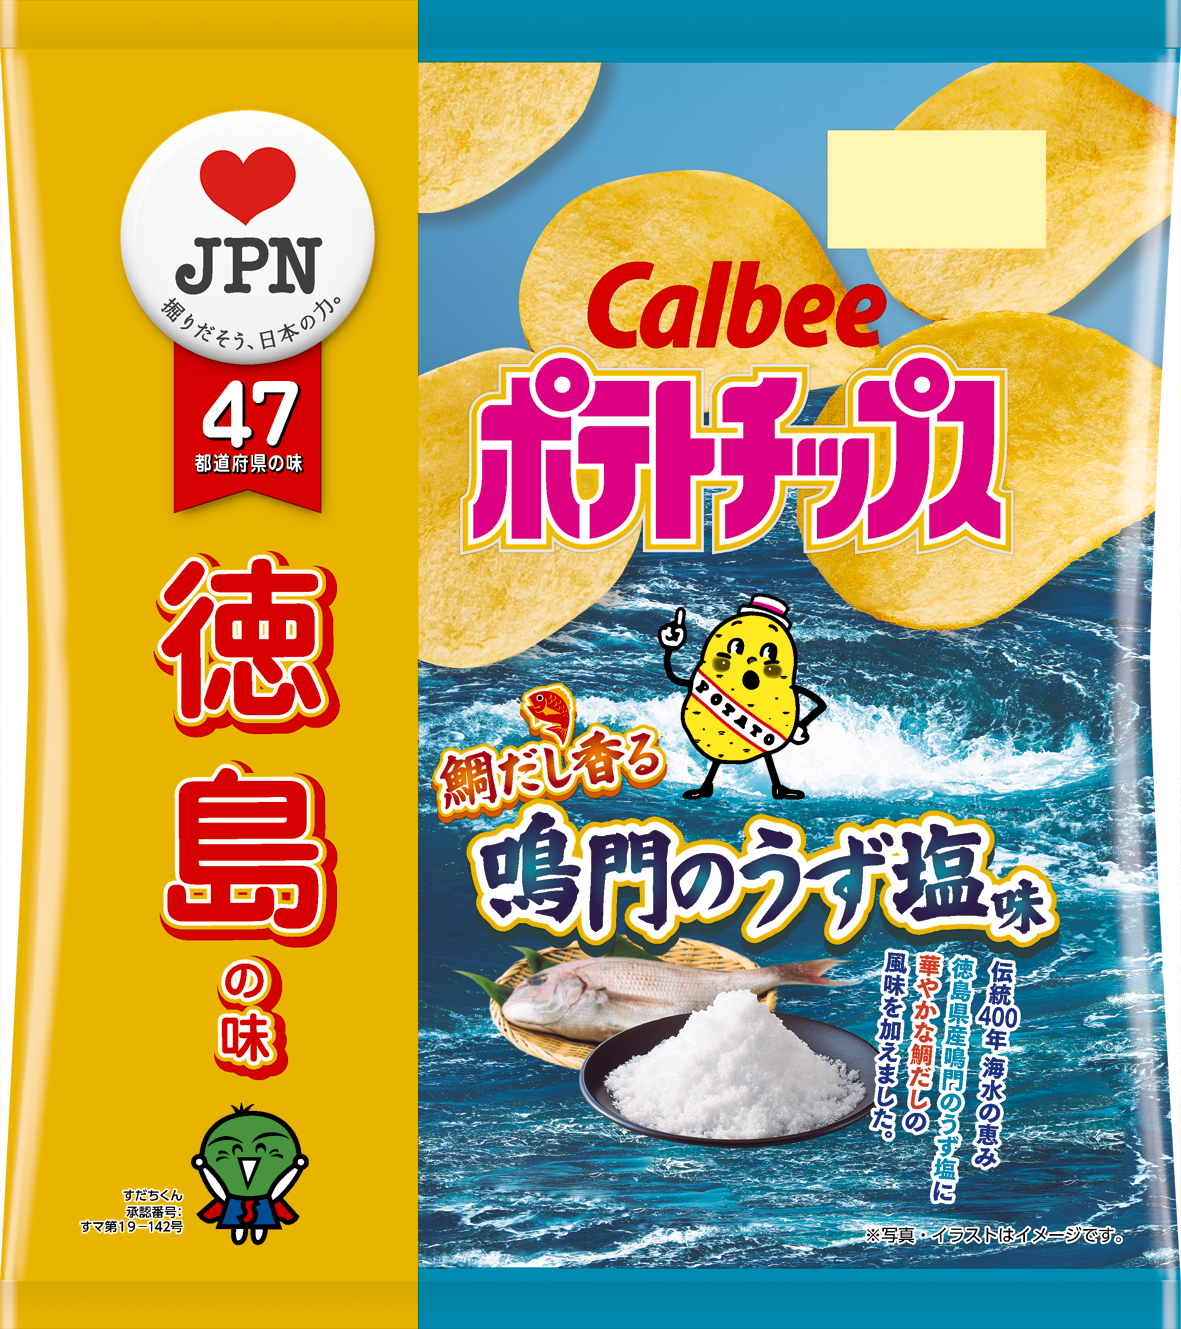 徳島の味 ポテトチップス 鯛だし香る鳴門のうず塩味 7月6日 月 発売 約400年の伝統 鳴門のうず塩使用 カルビー株式会社のプレスリリース